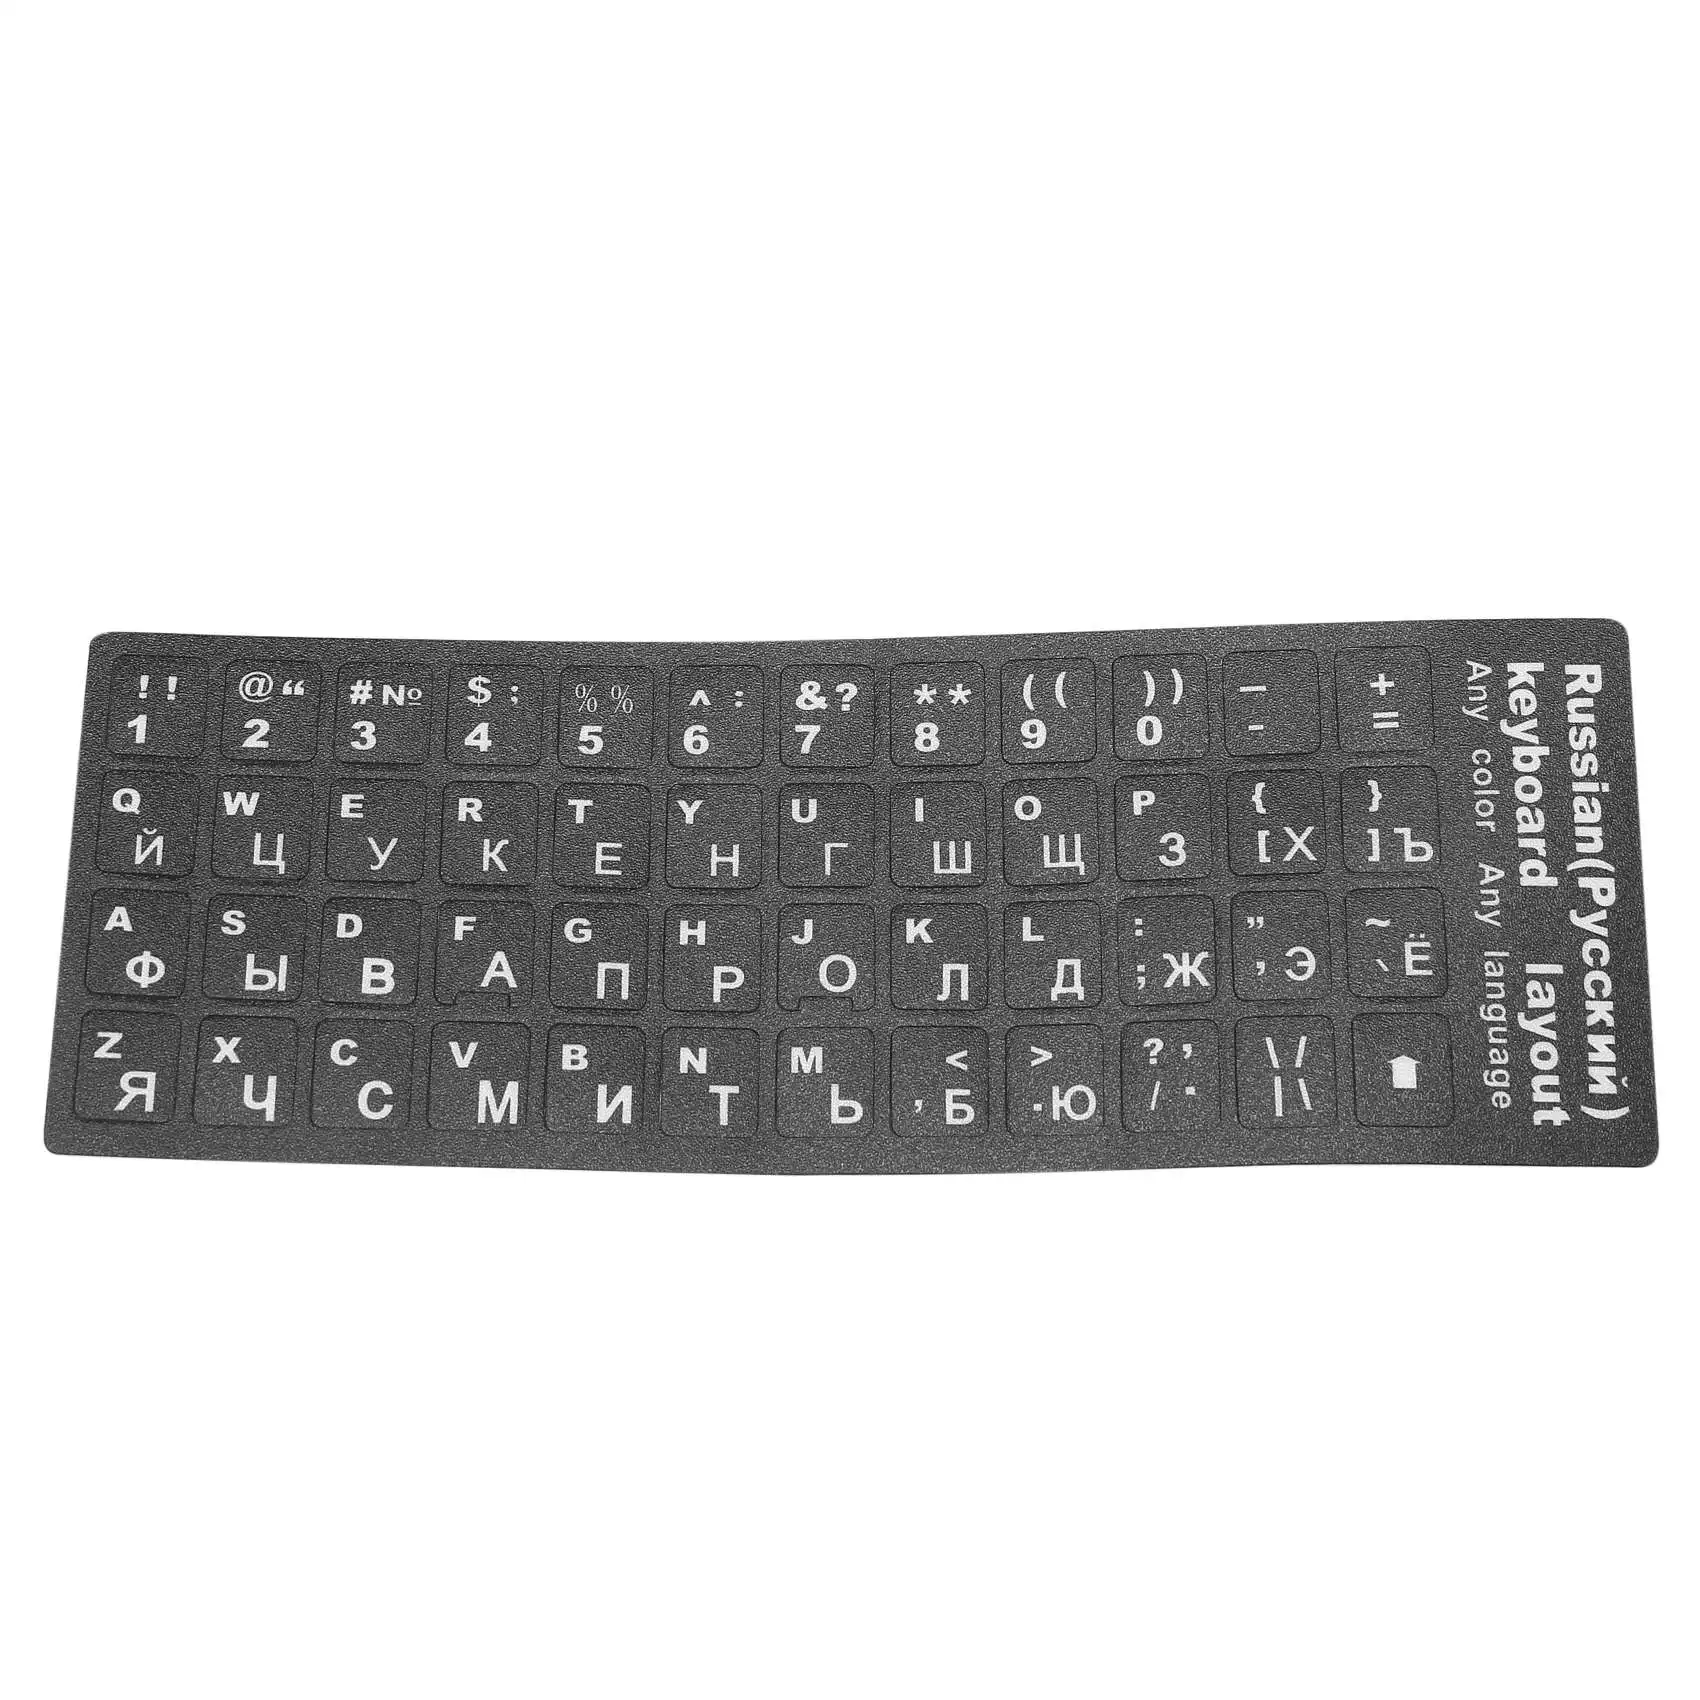 

Russian Letters Keyboard Sticker for Notebook Laptop Desktop PC Keyboard Covers Russia Sticker